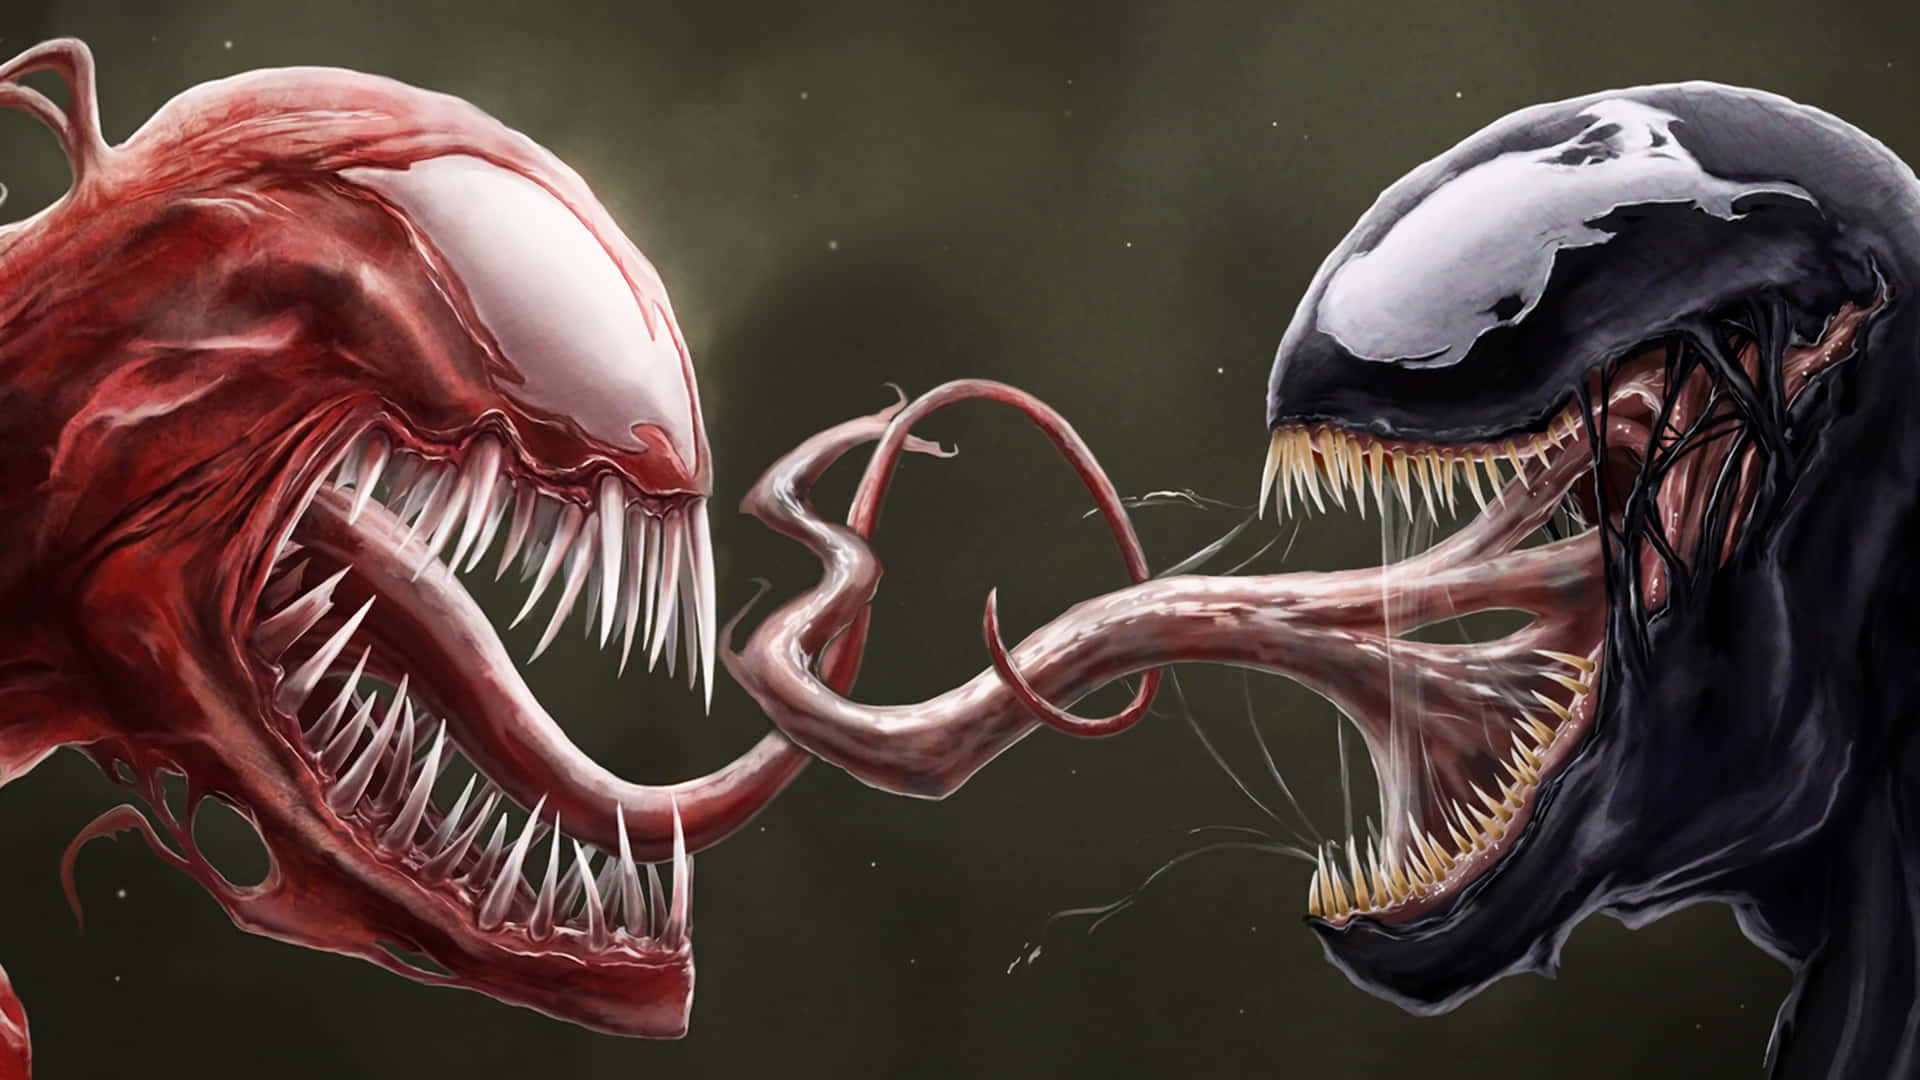 Klargør dig til en spændende oplevelse, når Venom og Carnage går hoved-til-hoved i denne intense superheltekamp. Wallpaper